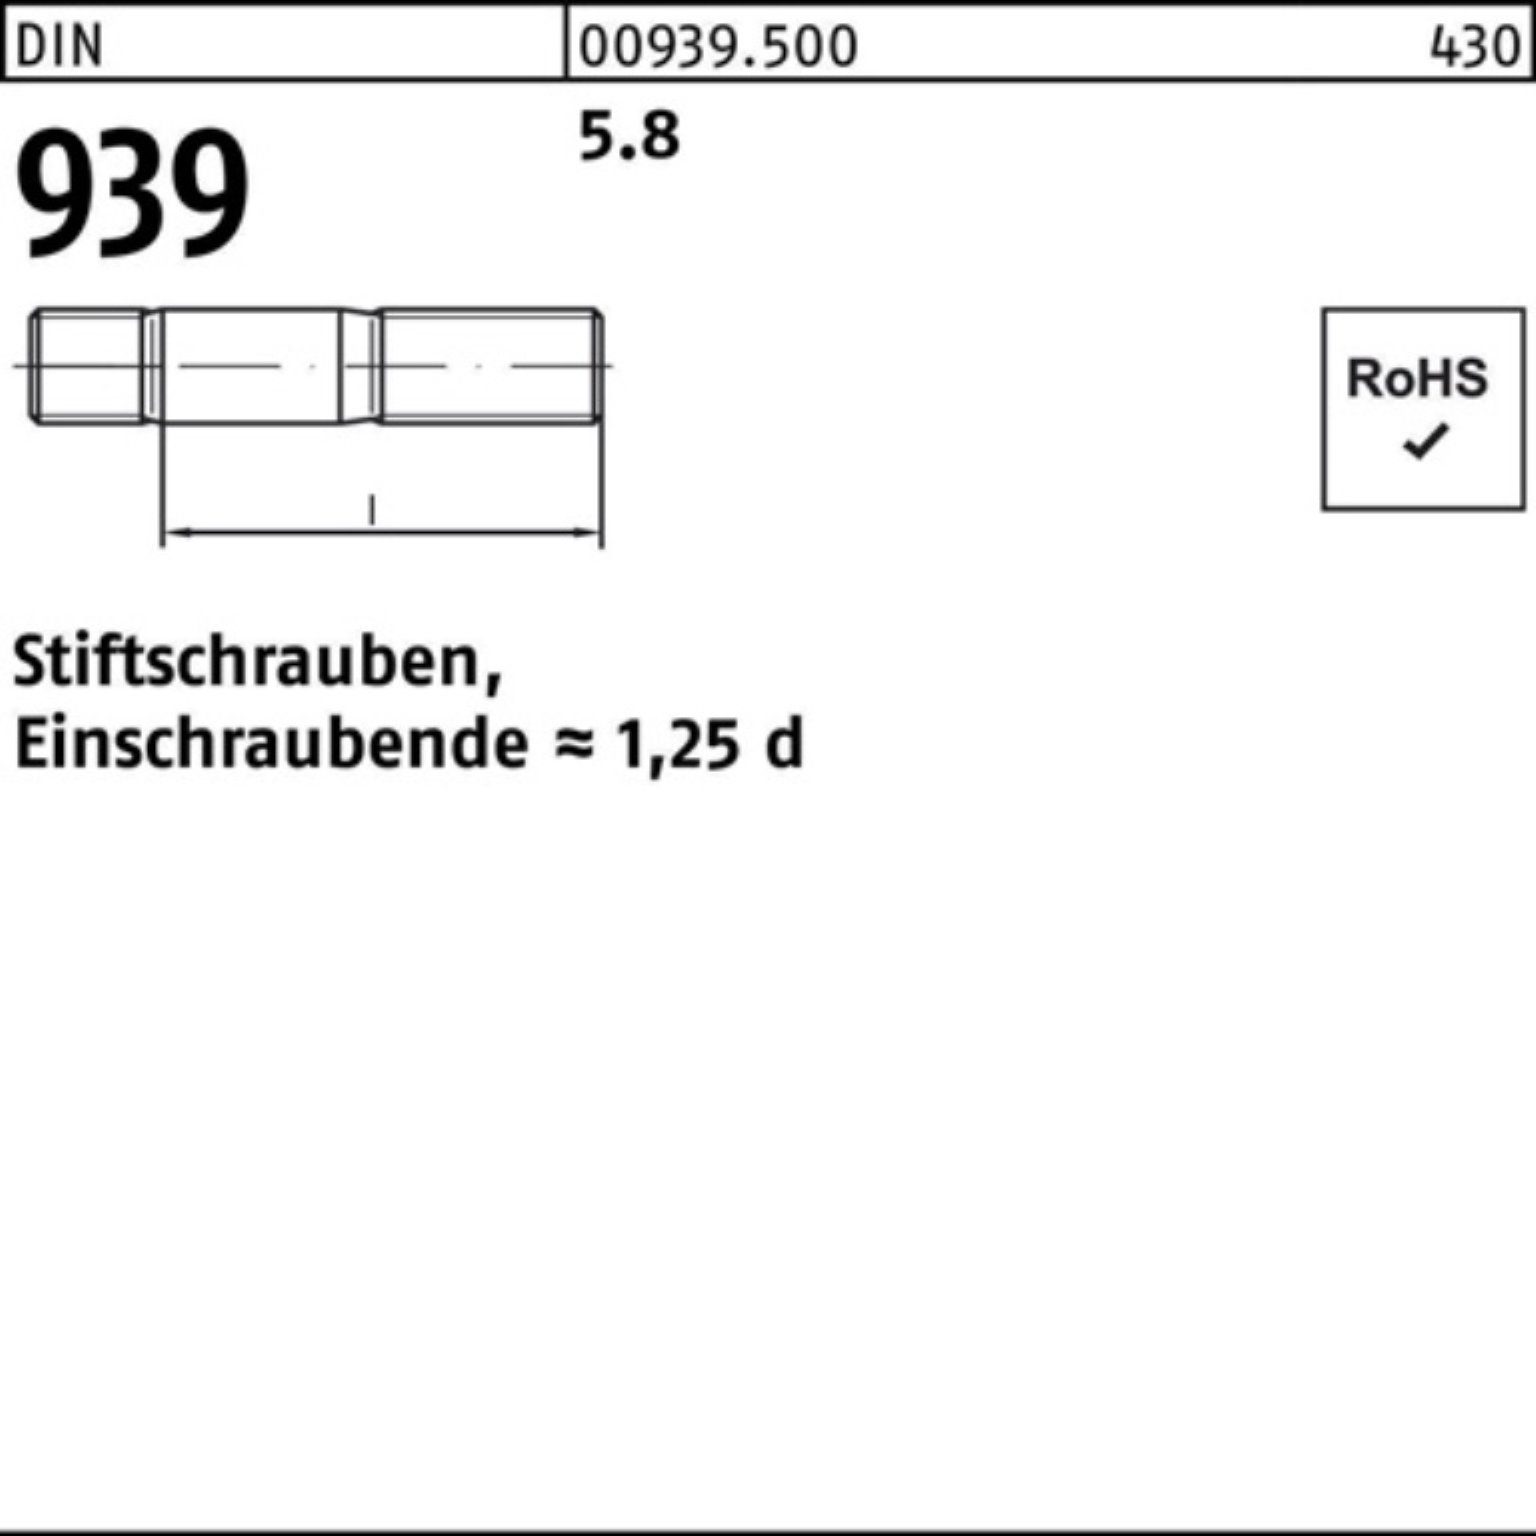 DIN Einschraubende=1,25d 120 Stiftschraube Pack Stiftschraube M30x 100er S Reyher 5.8 939 1